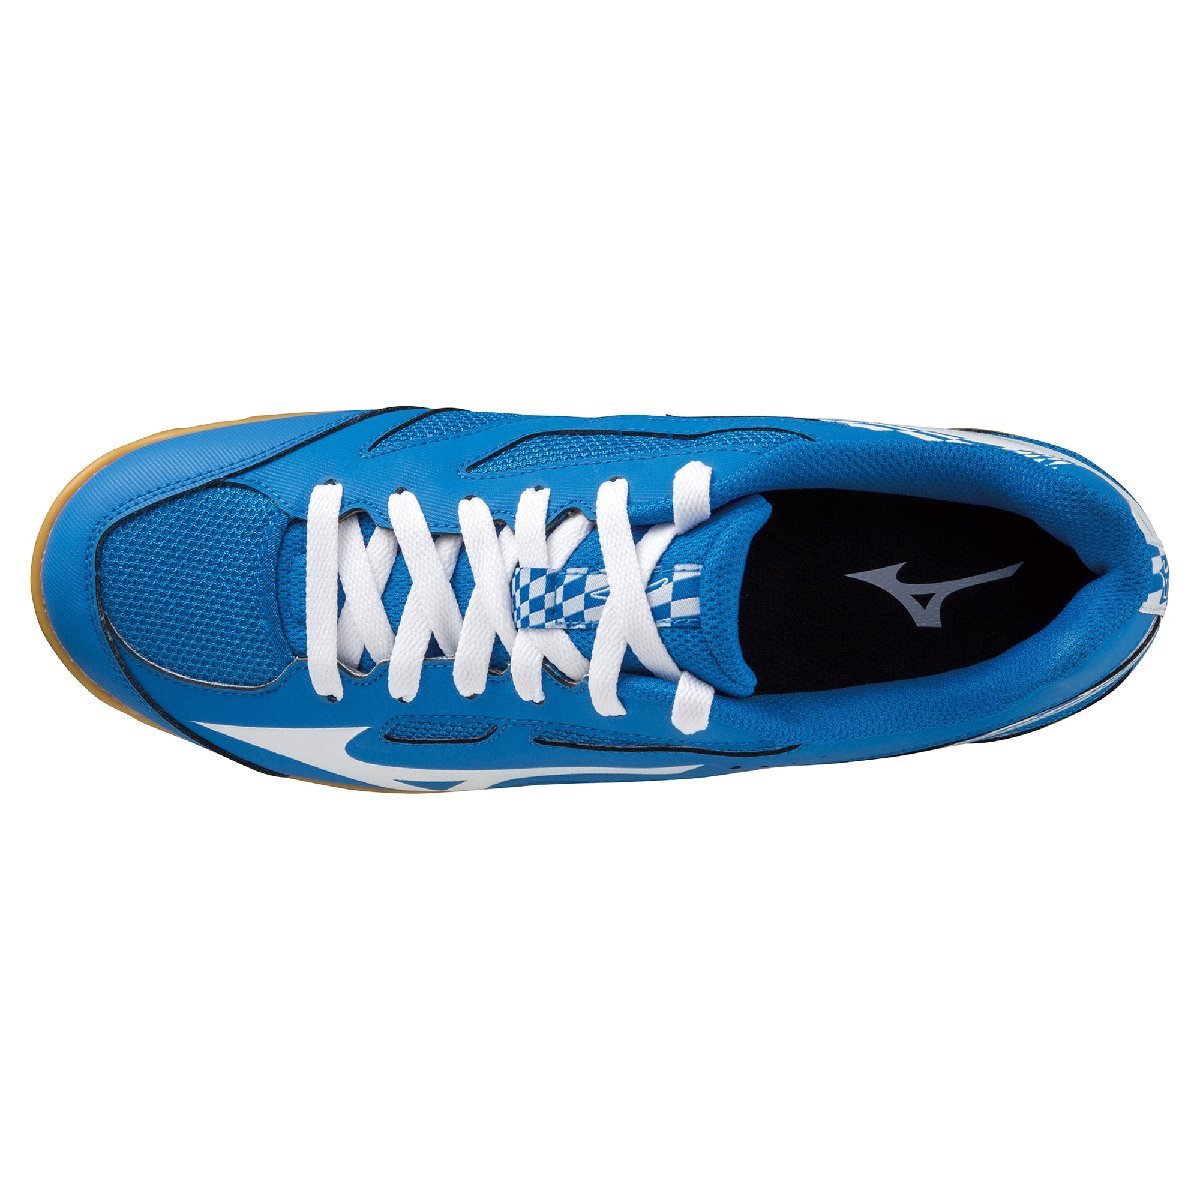 25.0cm Mizuno настольный теннис обувь Cross Match so-do81GA213031 голубой × белый 